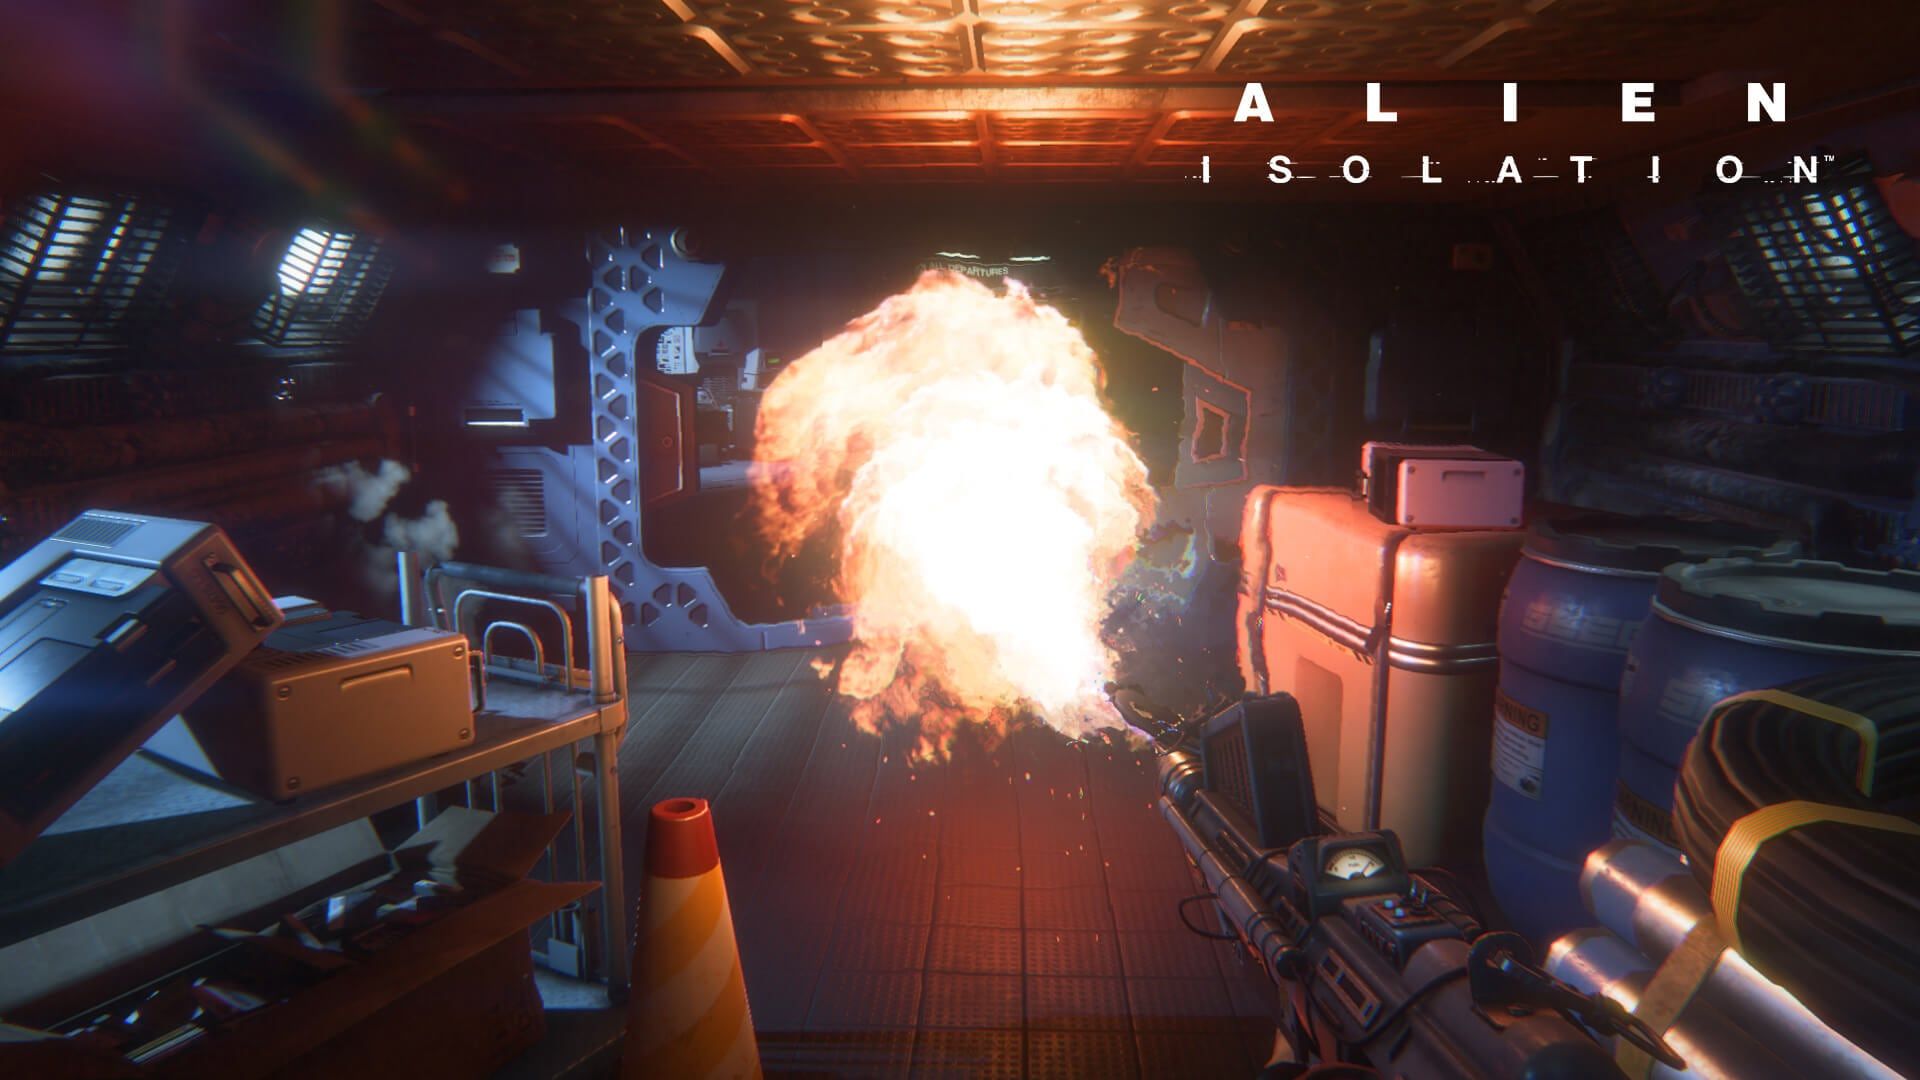 映画「エイリアン」のホラーゲーム『Alien: Isolation』のPC版がEpic Games Storeで無料配布中。Steamでは国内からは購入不可な一品_003